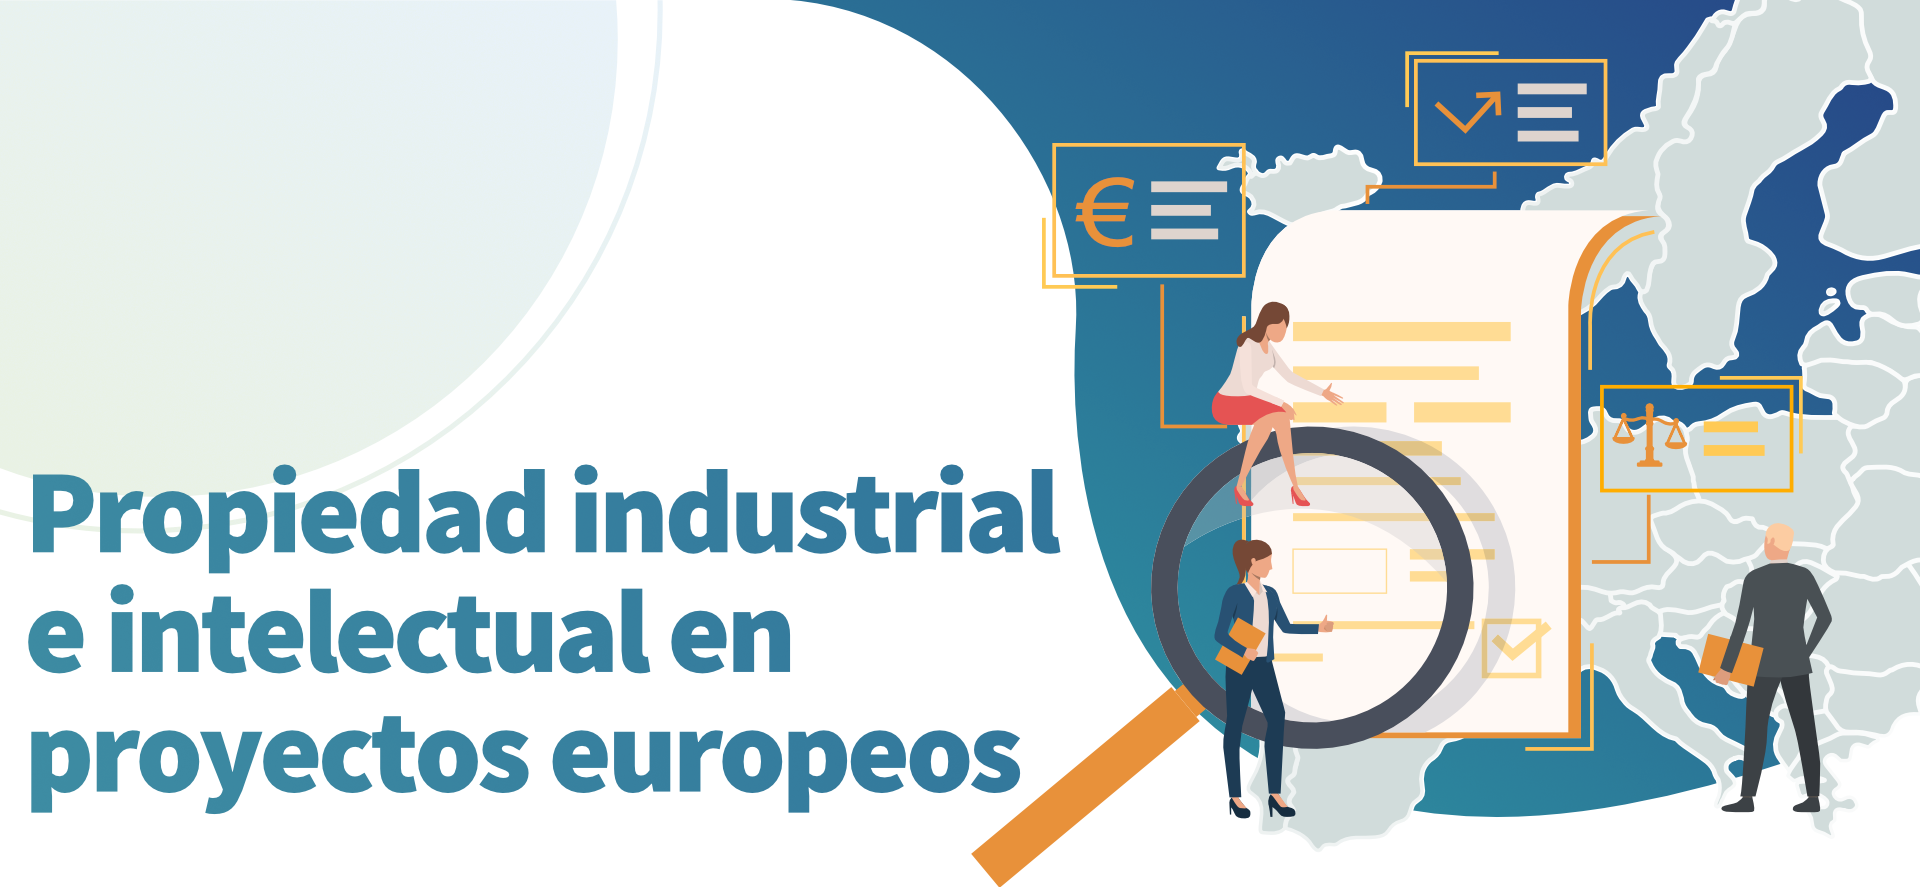 Propiedad industrial e intelectual en proyectos europeos